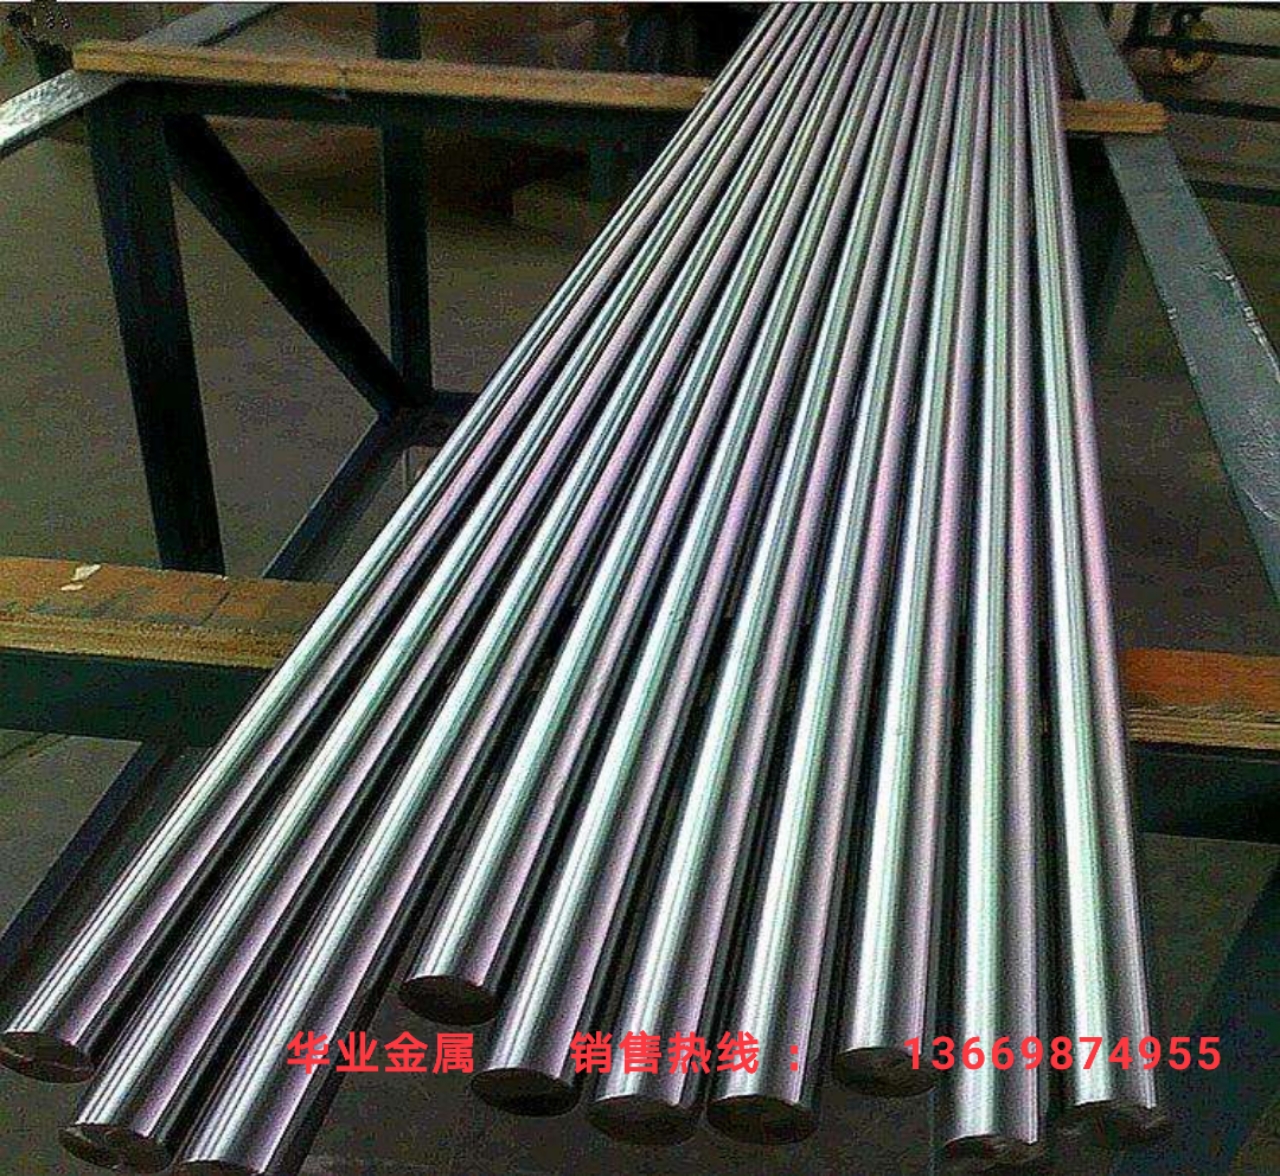 0Cr0Cr25Al5高电阻电热合金线材 卷带